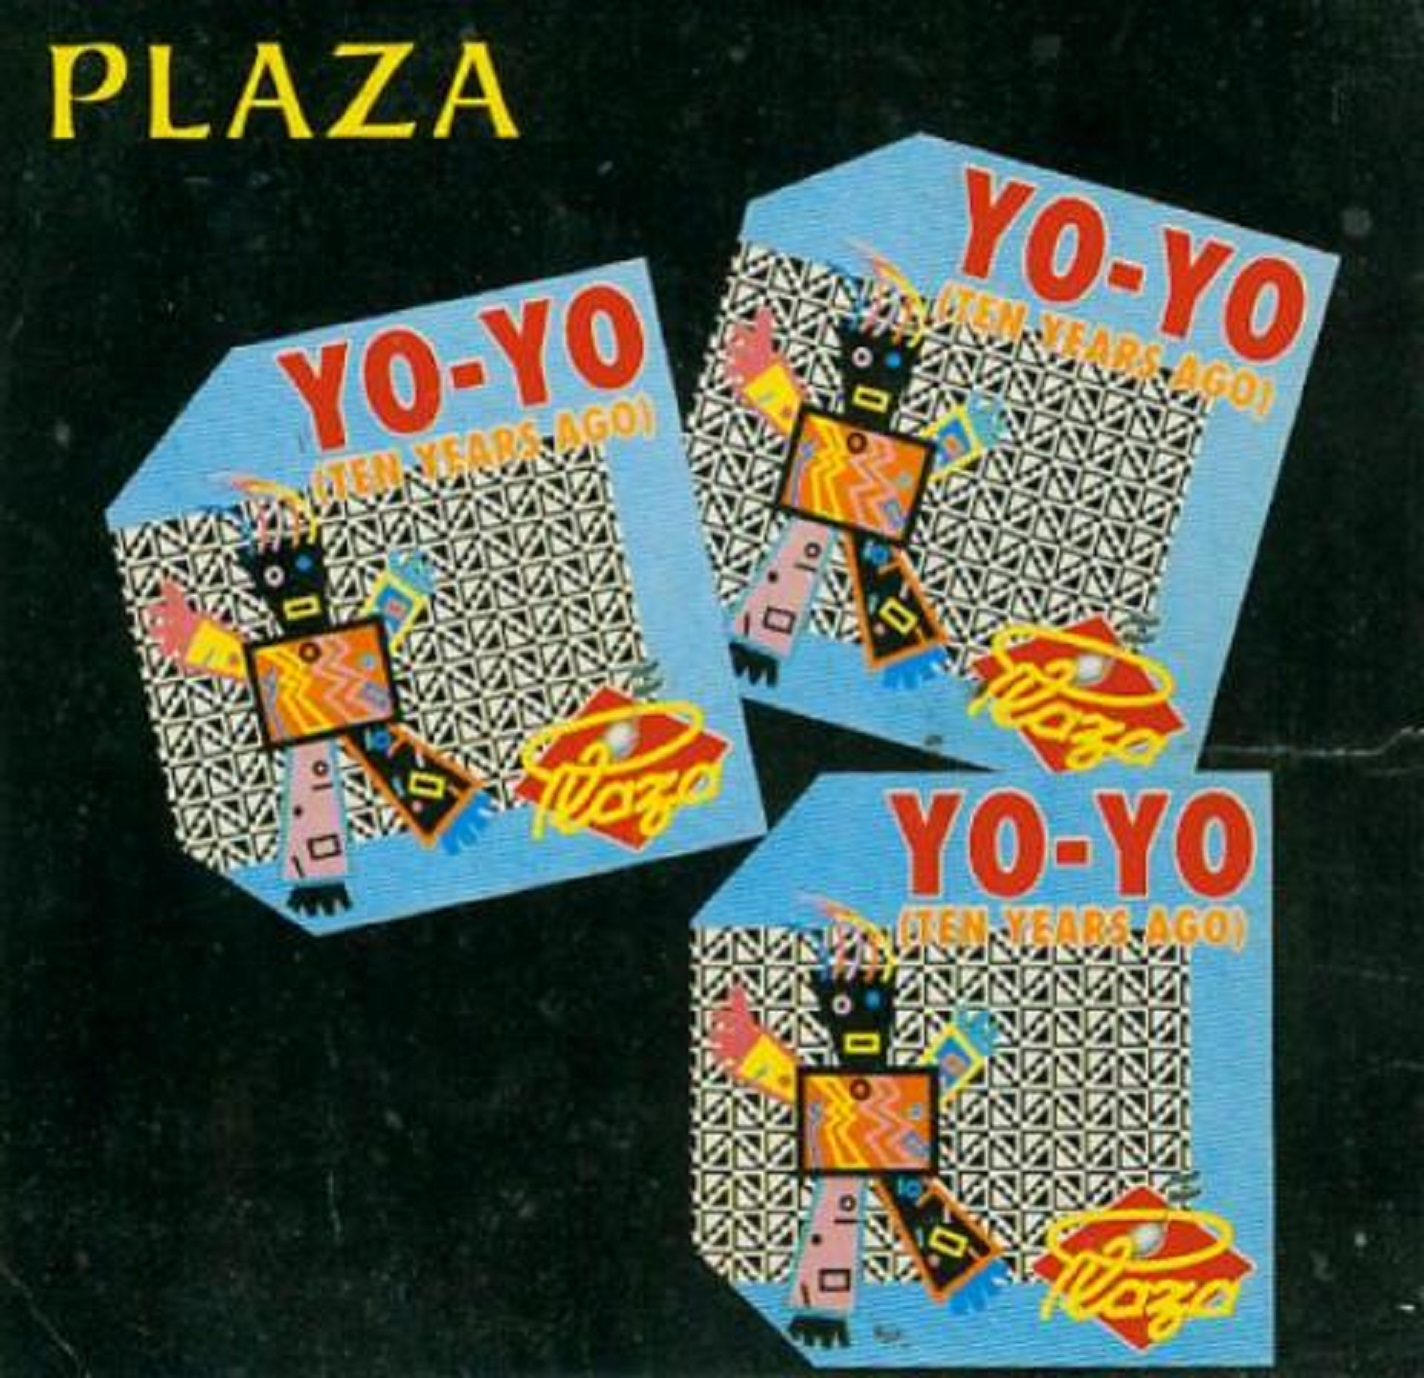 Plaza - Yo-Yo (CDM) FLAC - 1989 - Germany